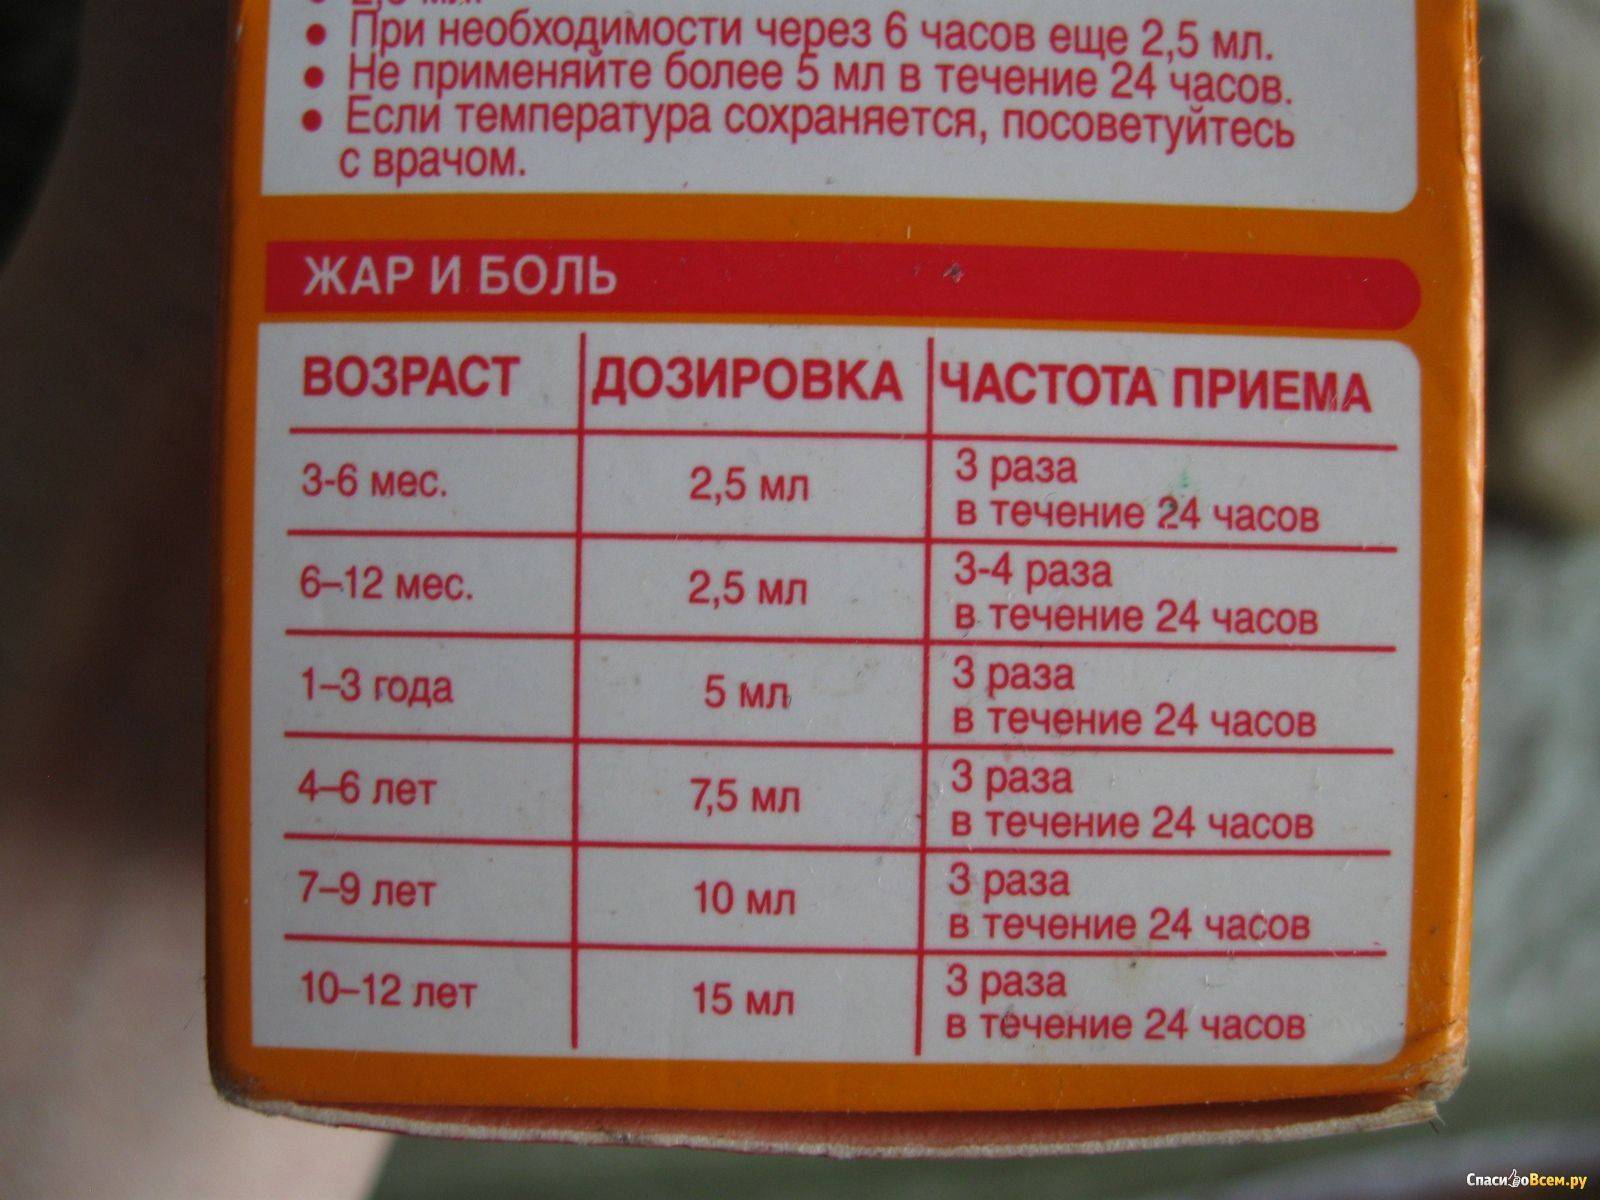 Ибупрофен суспензия - инструкция по применению для детей: дозировка детского сиропа